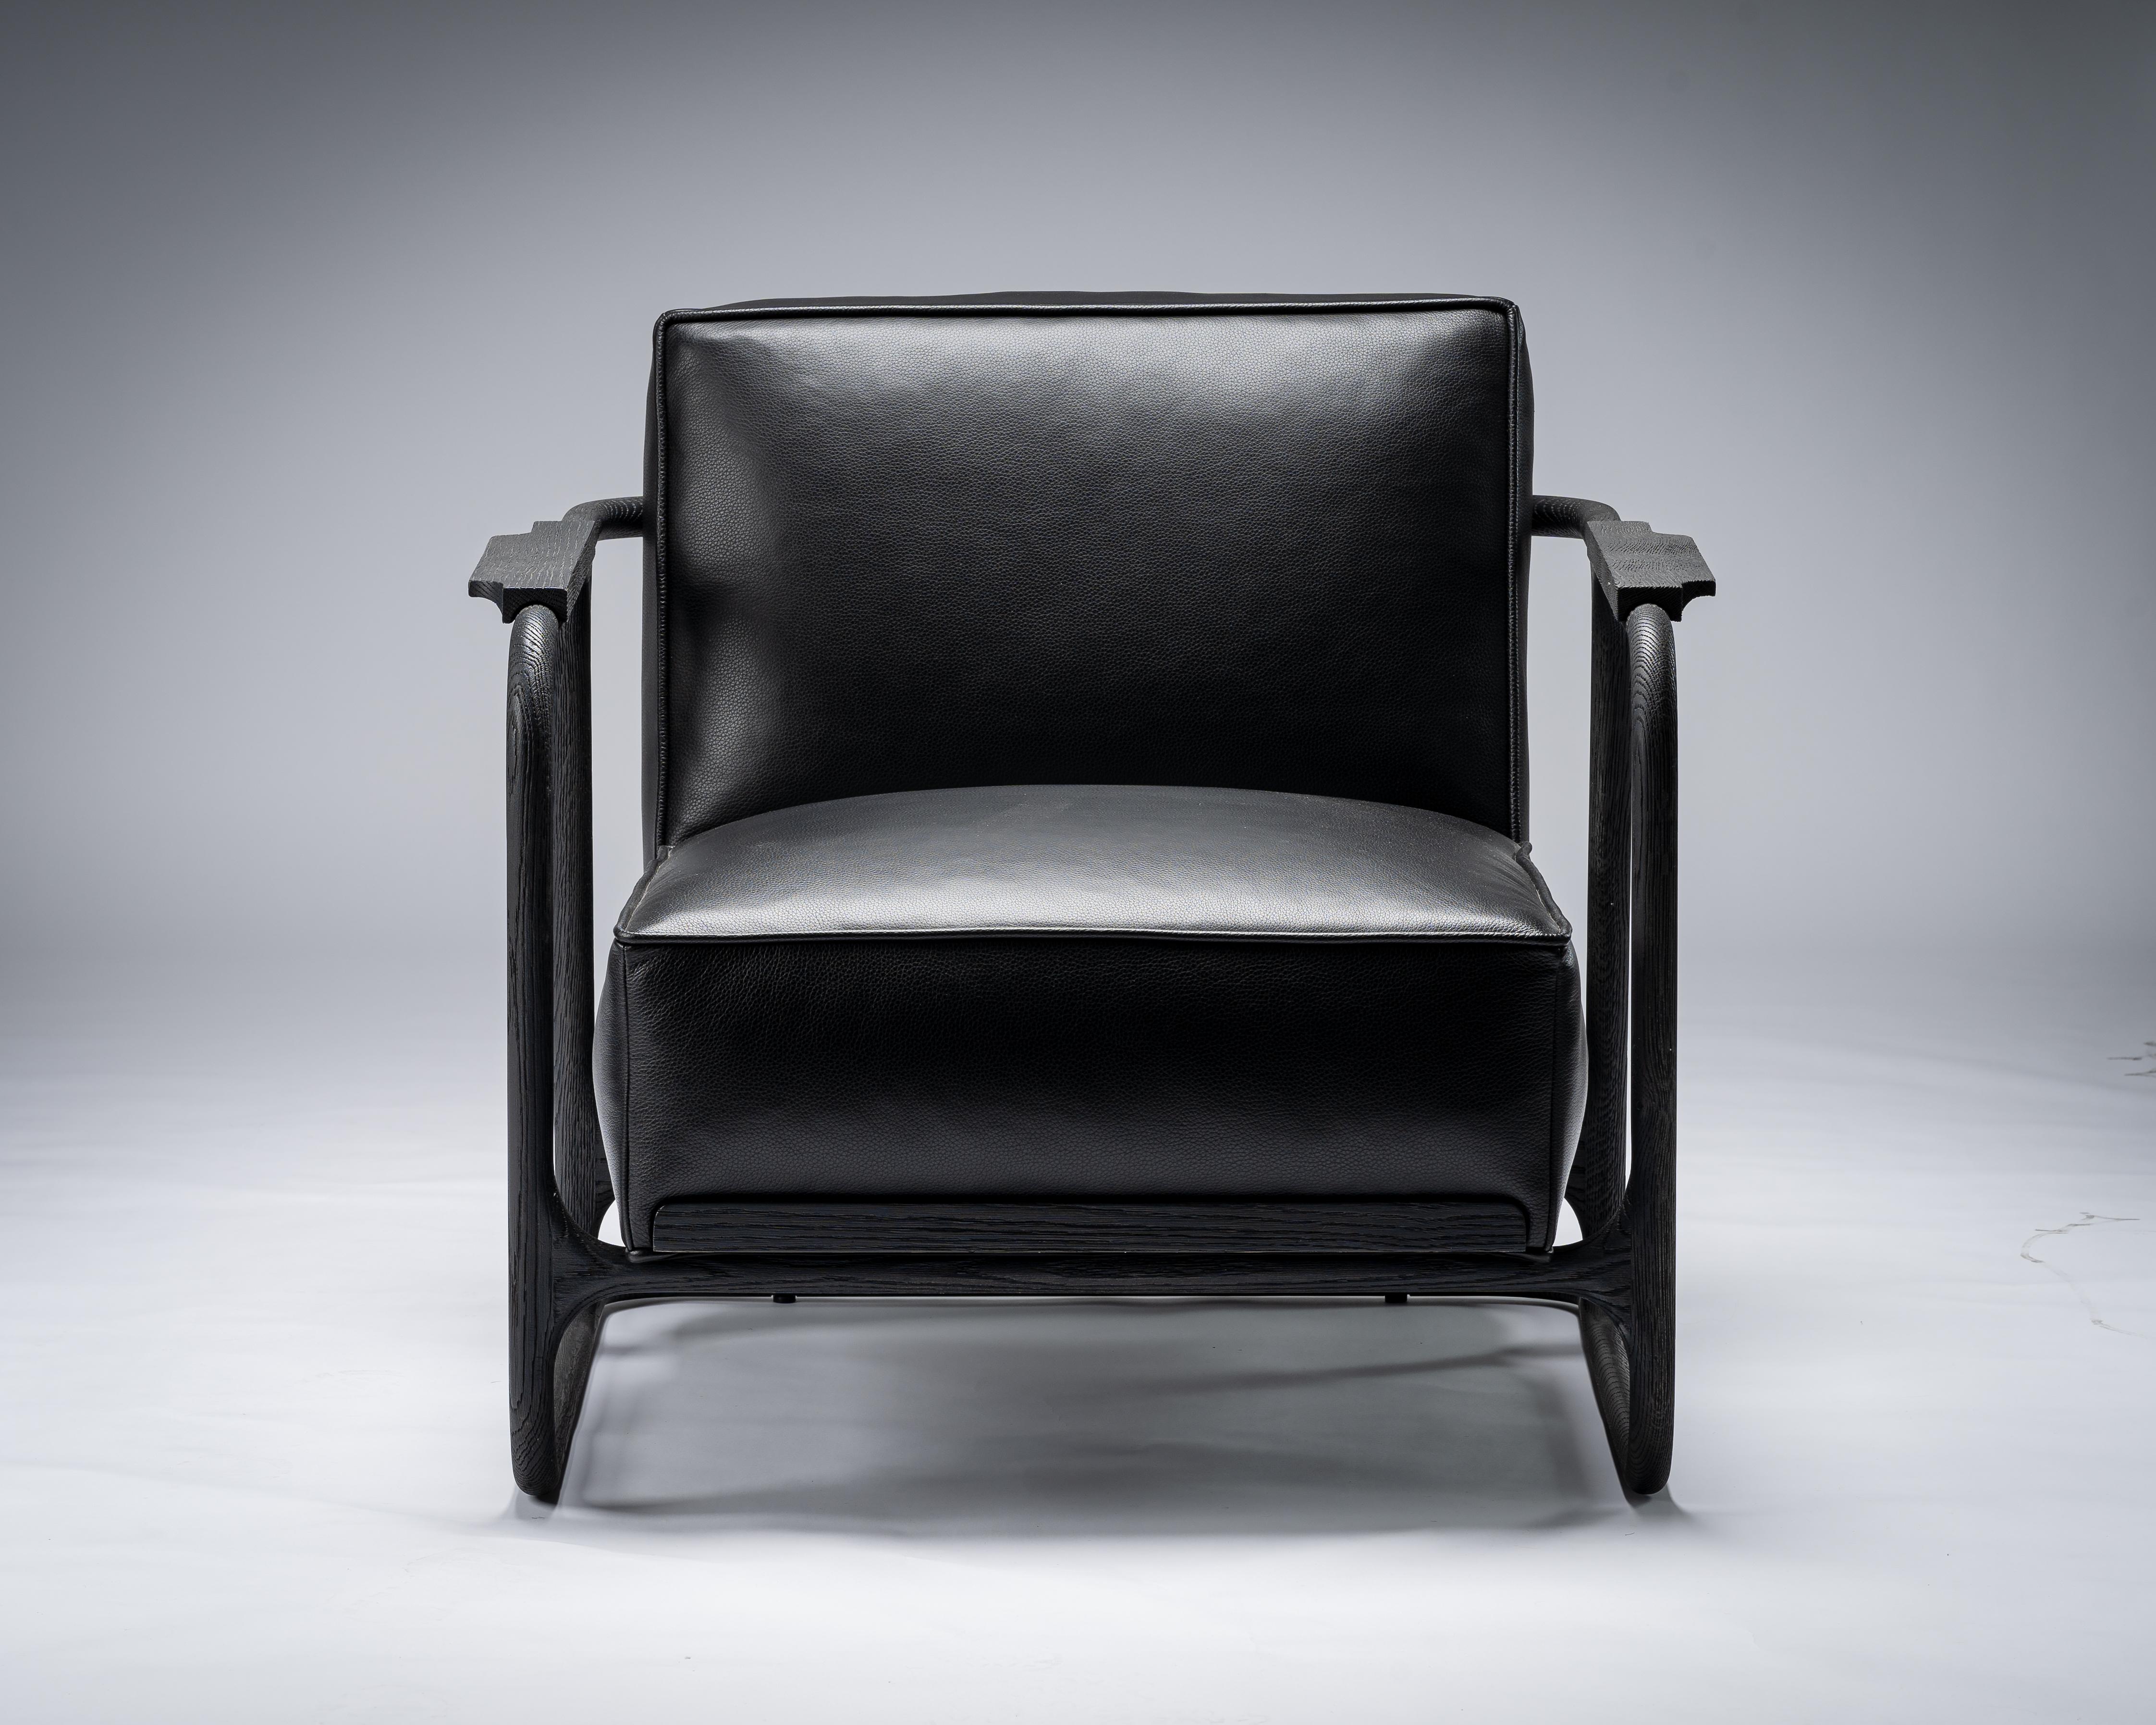 Schwarzer stuhl ALFRED von Mandy Graham

ALFRED
A01, Stuhl Lounge Sessel
Nussbaum / sandgestrahlte Eiche und Leder
Maße: 33.75